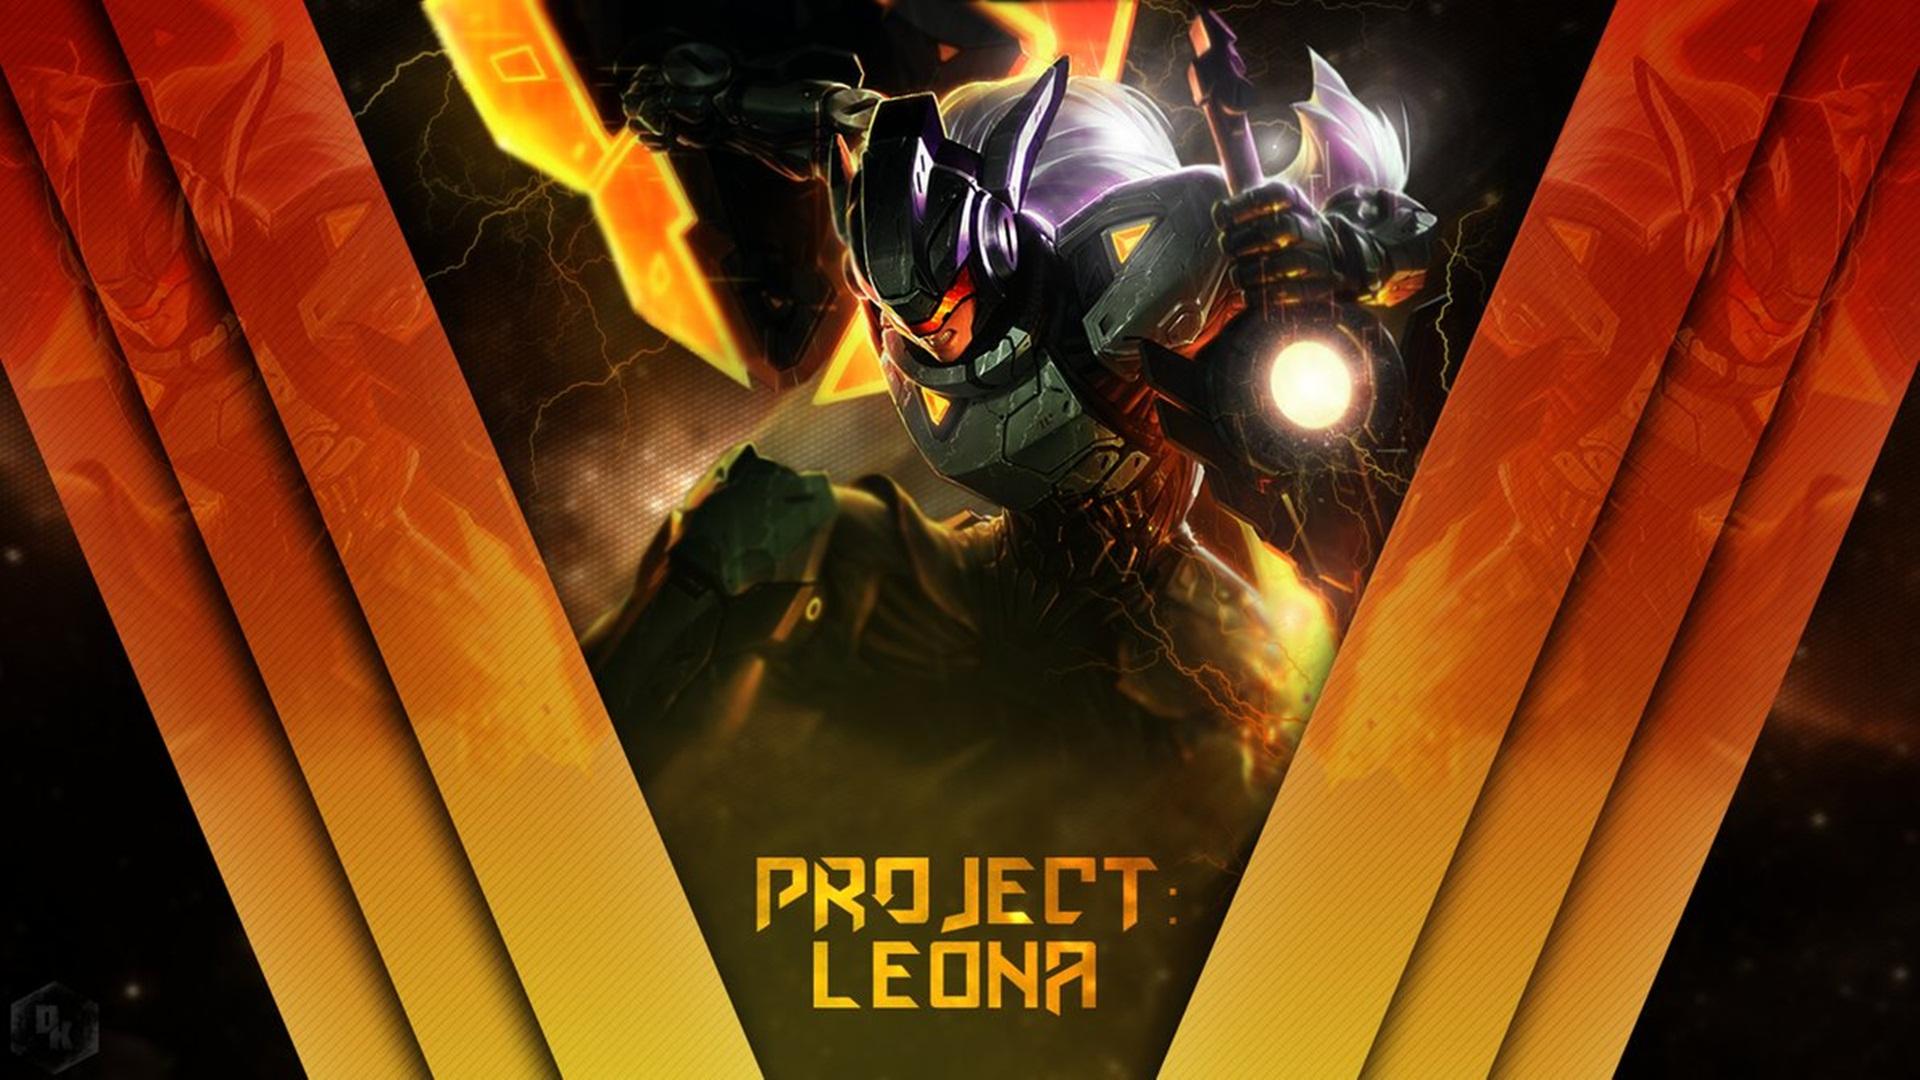 Leona HQ Background Wallpaper 40867